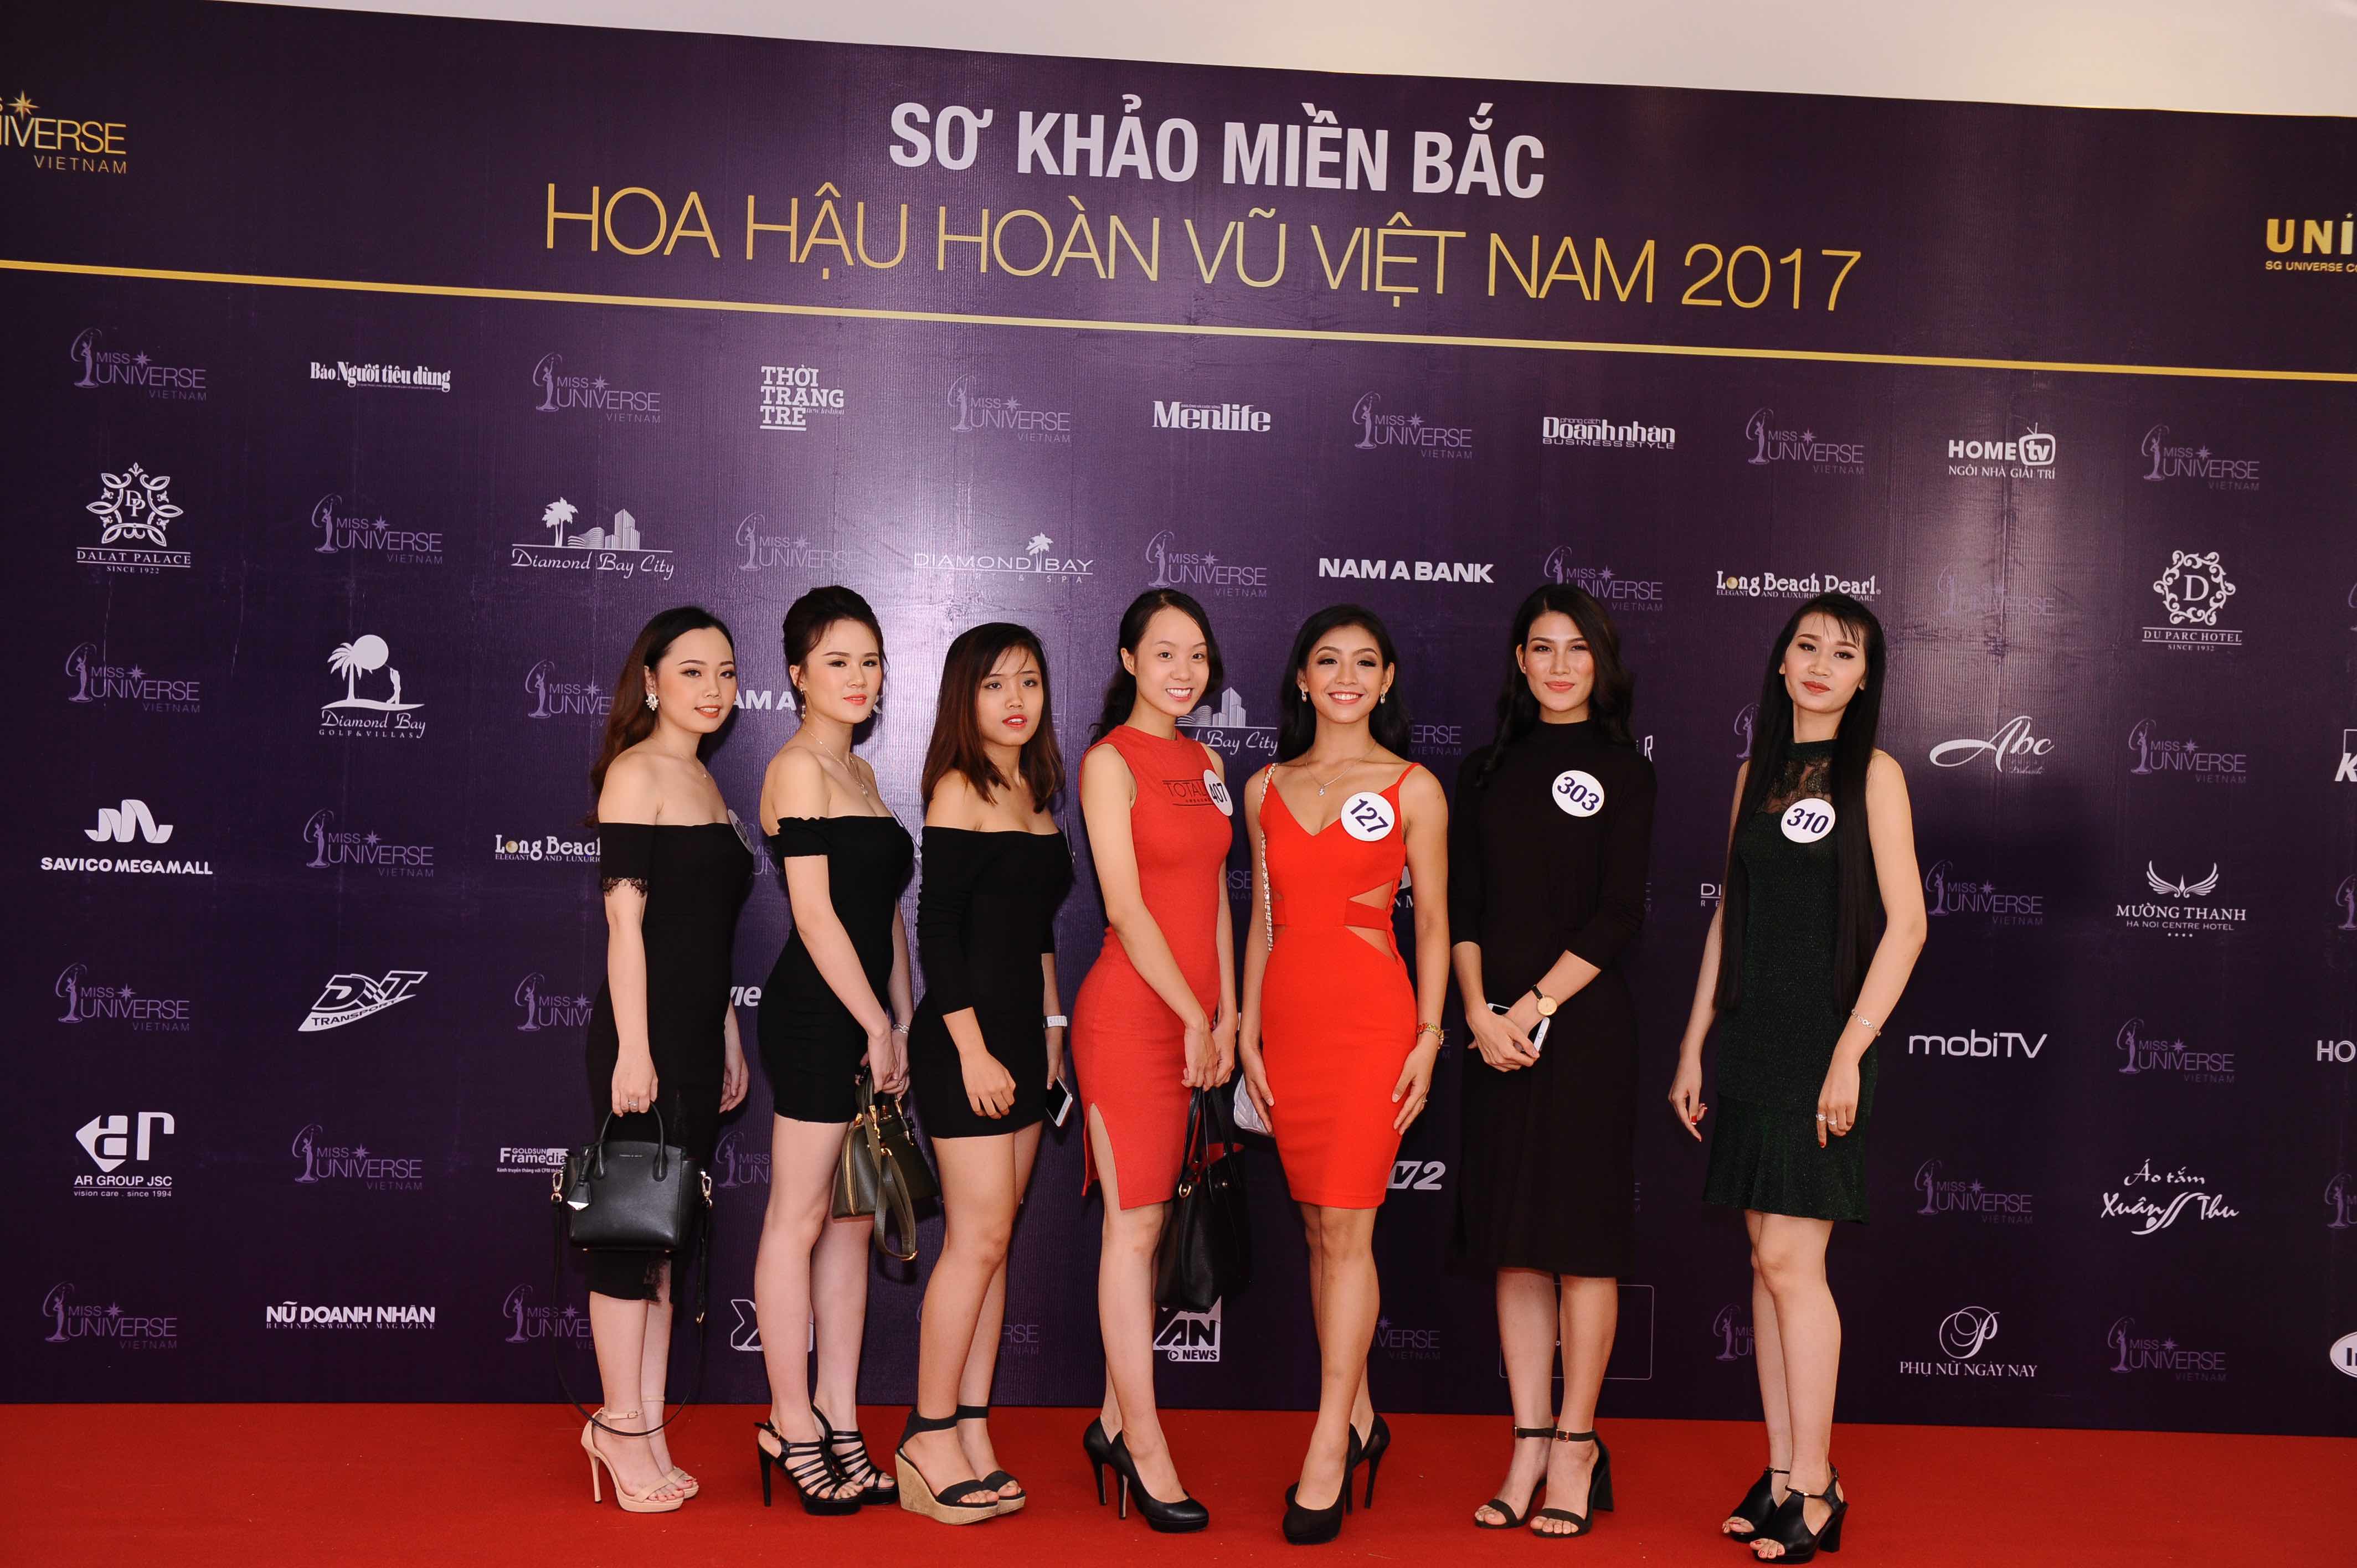 Vòng thi sơ khảo miền Bắc diễn ra sôi động tại Hà Nội